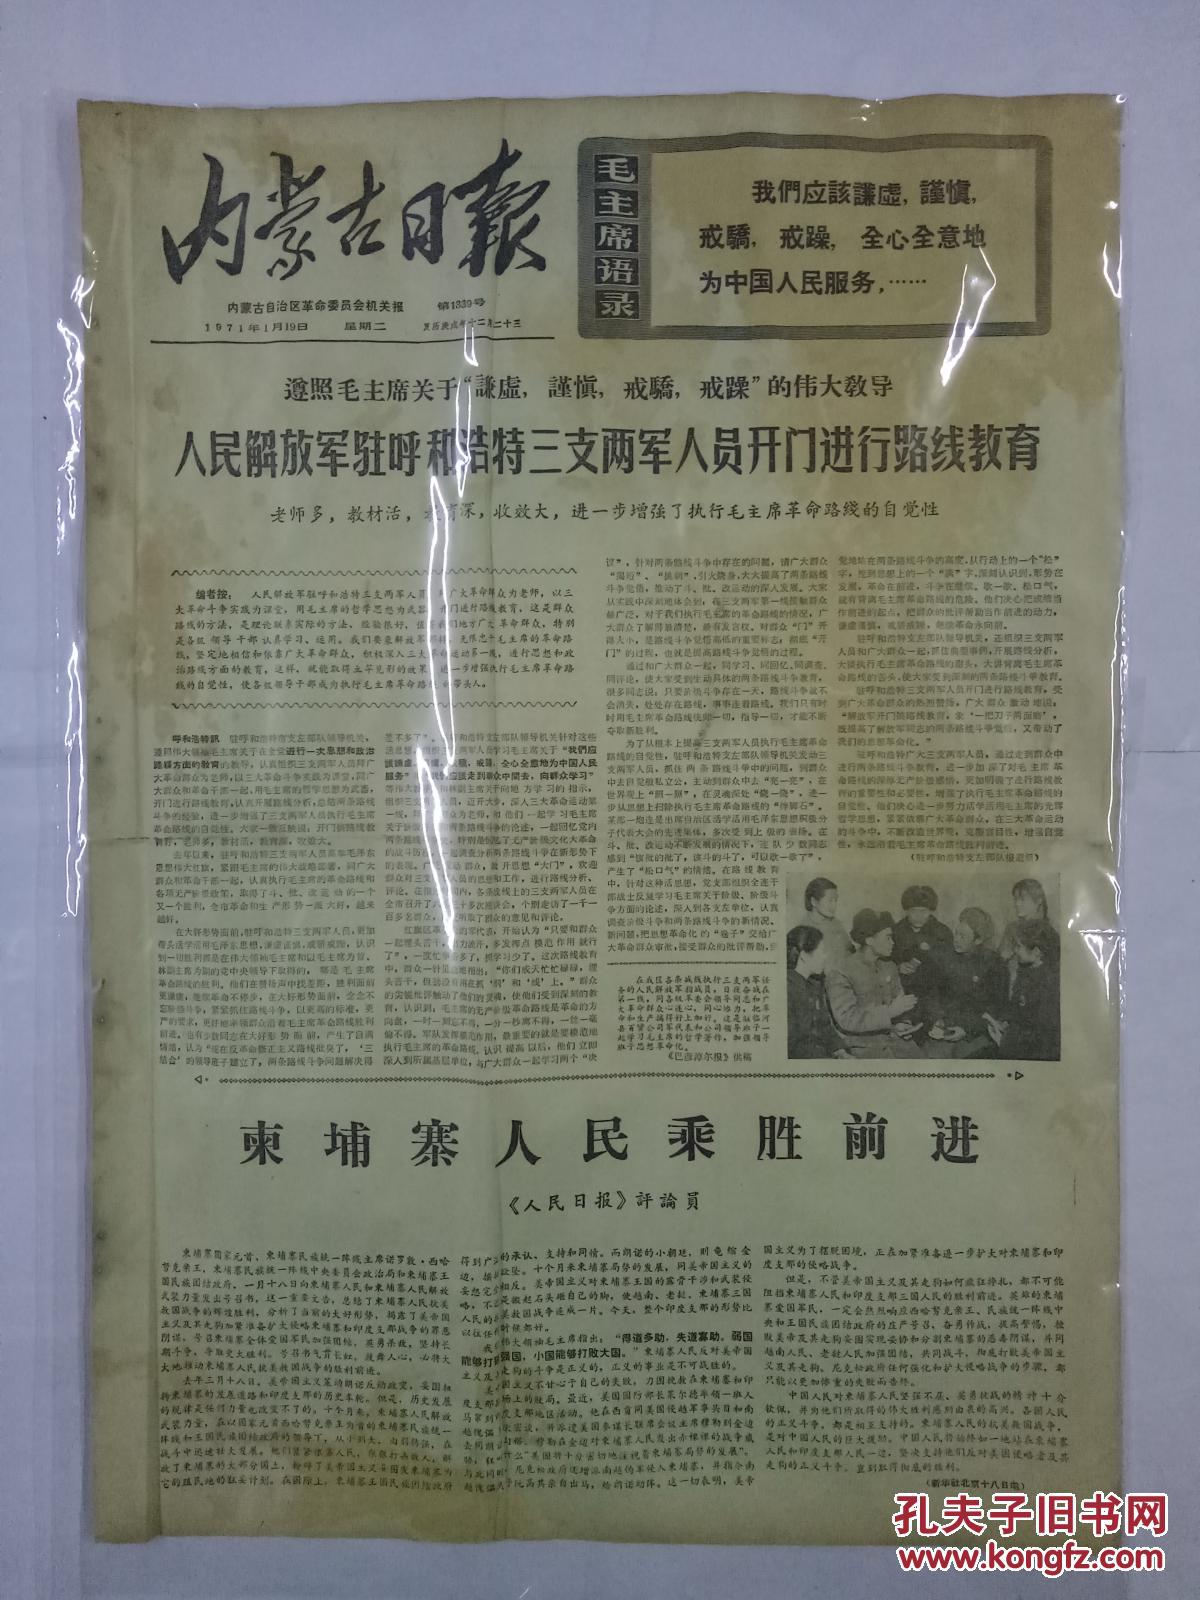 【图】内蒙古日报1971年1月19日人民解放军驻